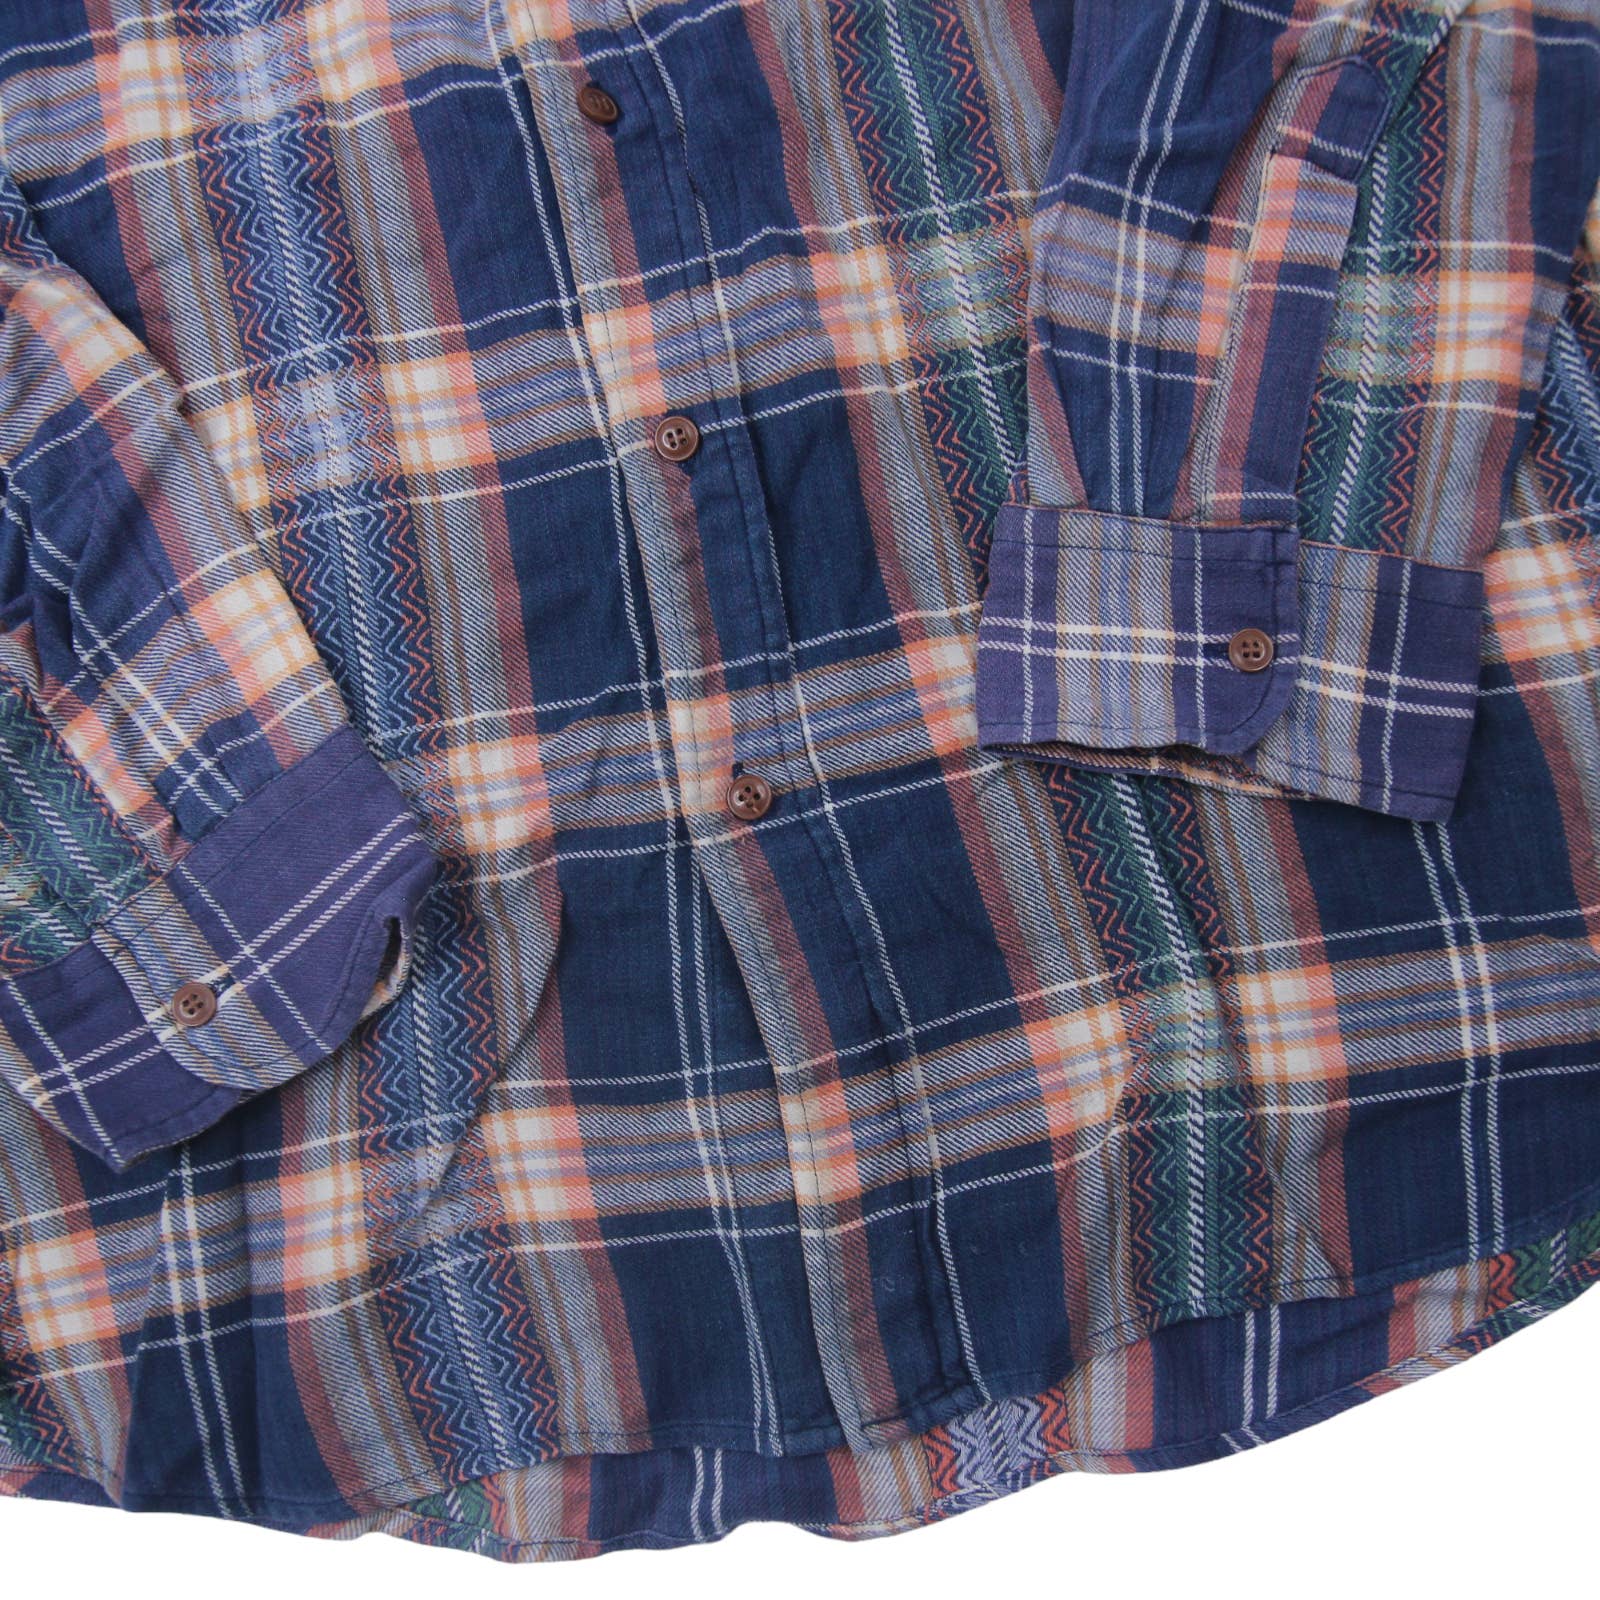 Vintage Men's Plaid Shirt Chaps Ralph Lauren Medium Size 